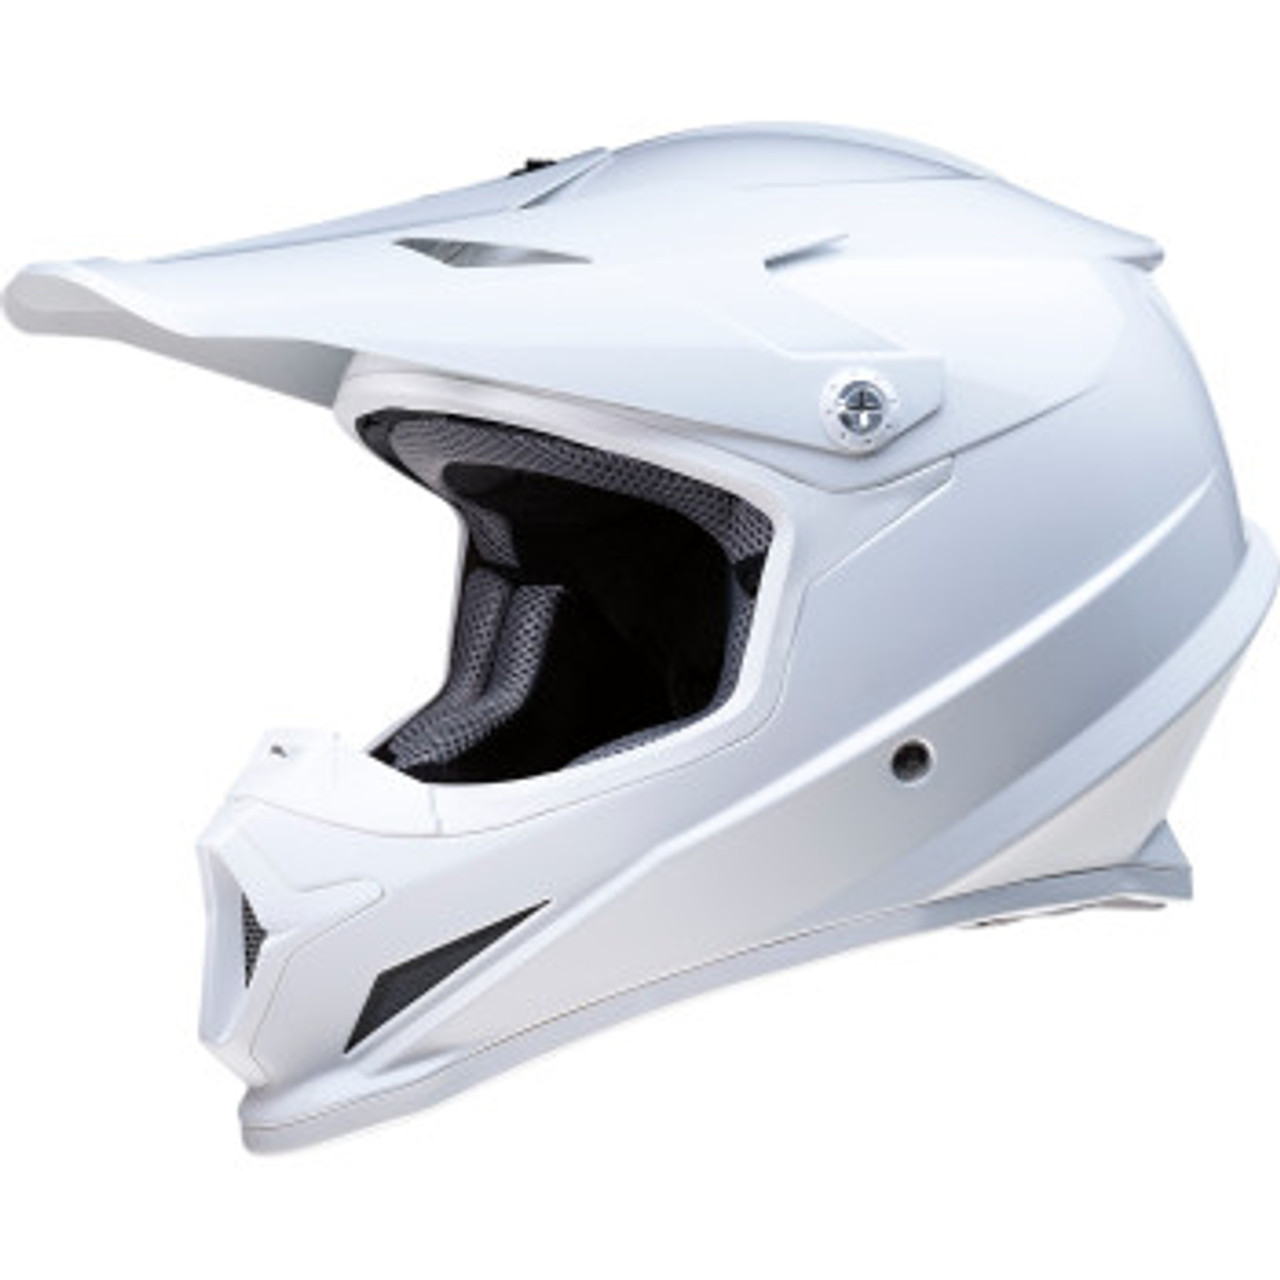 Rise Helmet - Gloss White